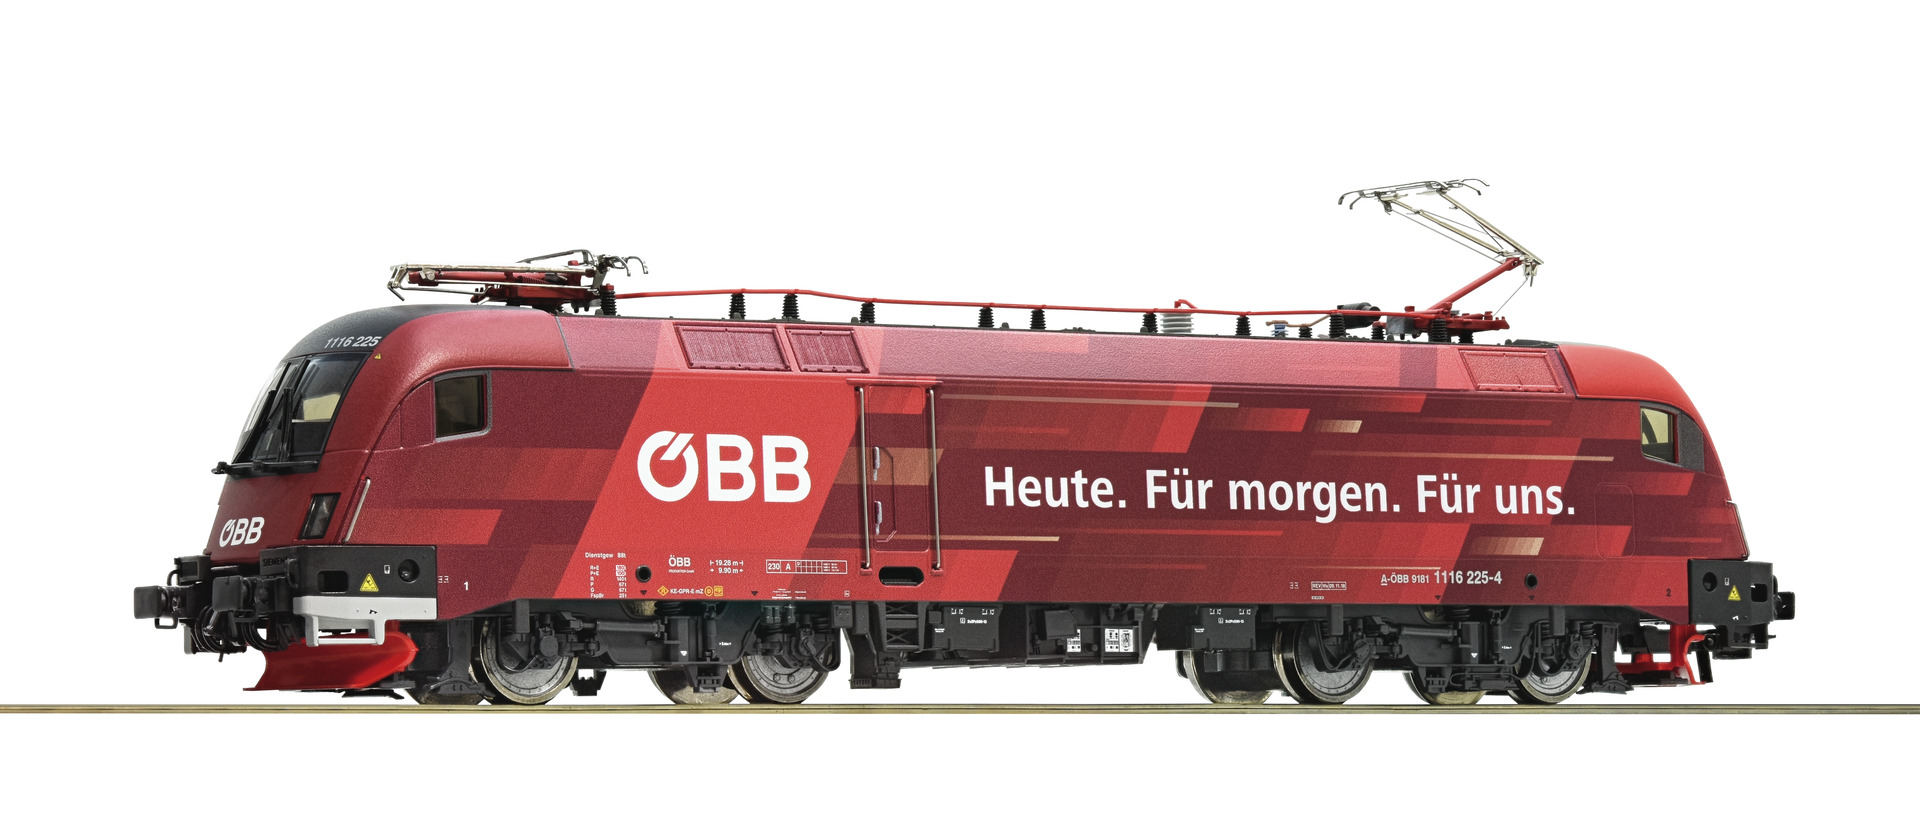 Roco 73267 - Electric locomotive 1116 225-4, ÖBB